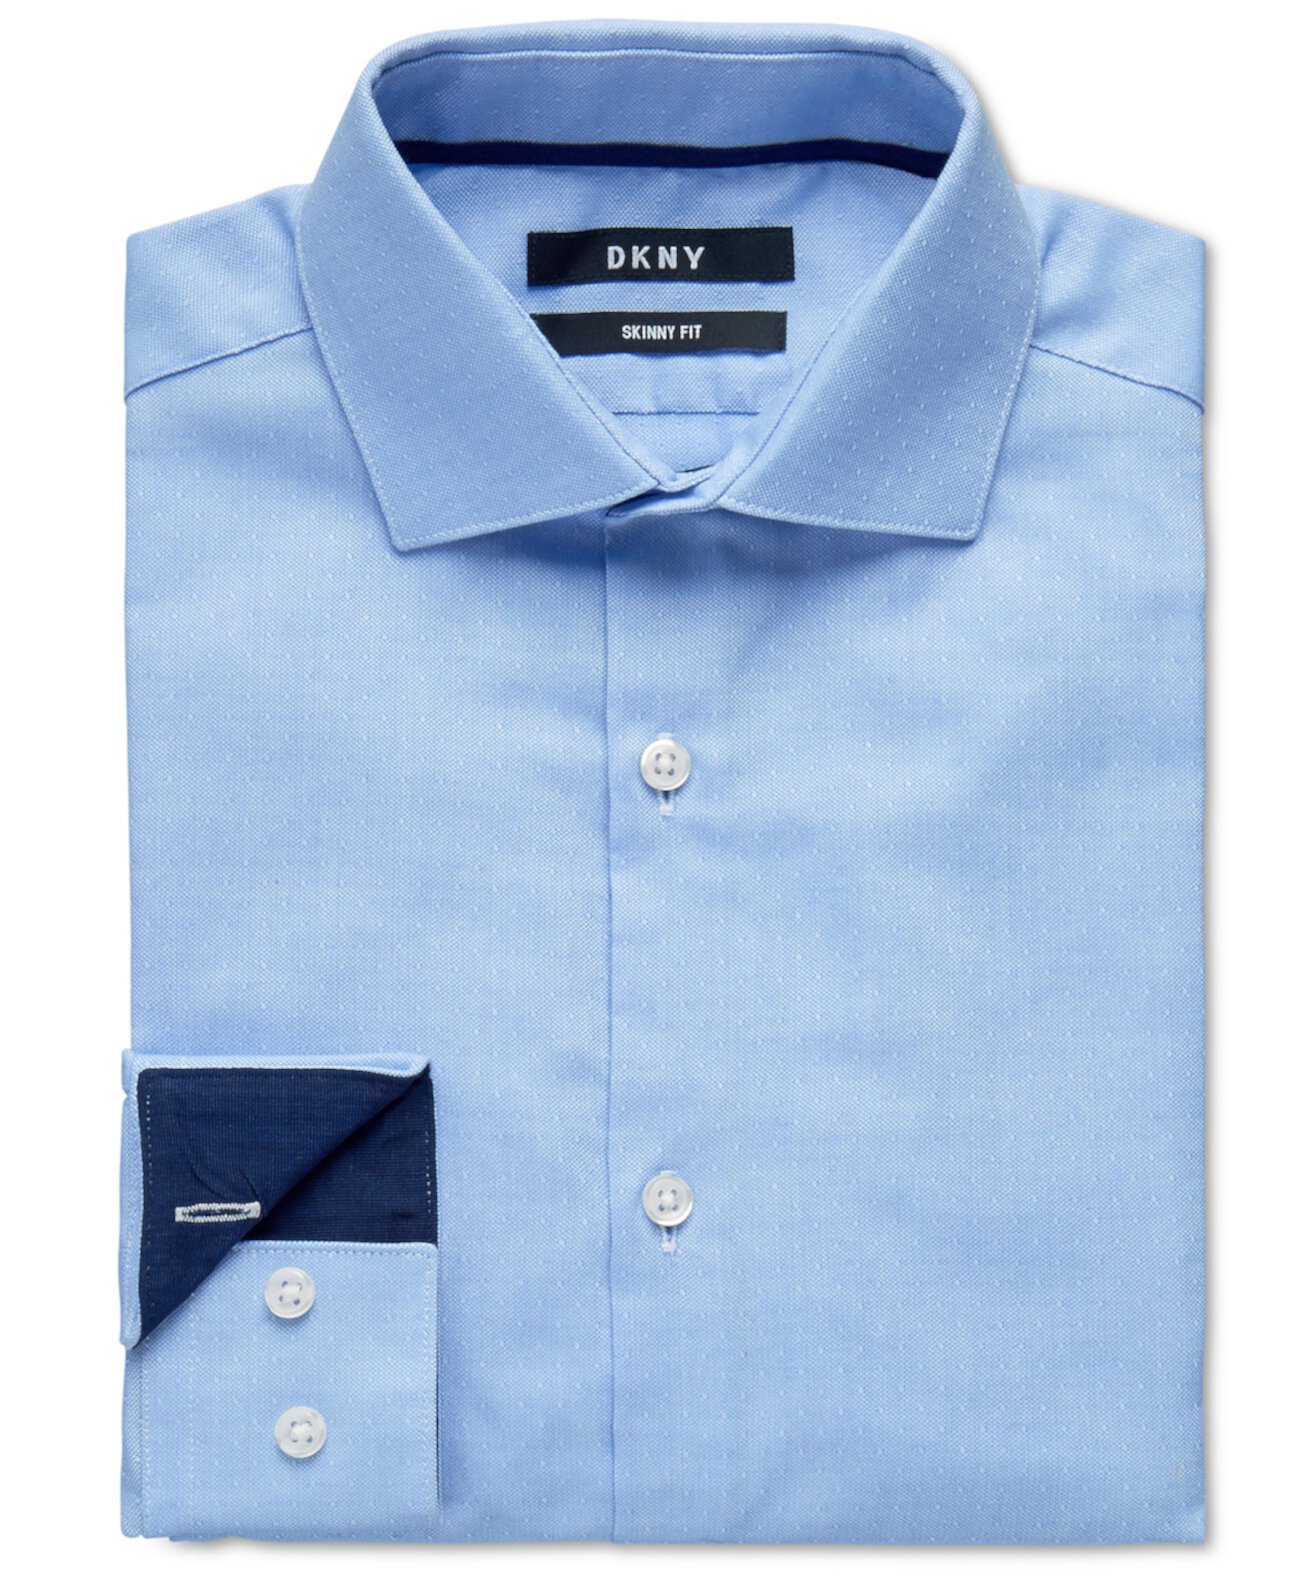 Голубая классическая рубашка в горошек в обтяжку для больших мальчиков DKNY